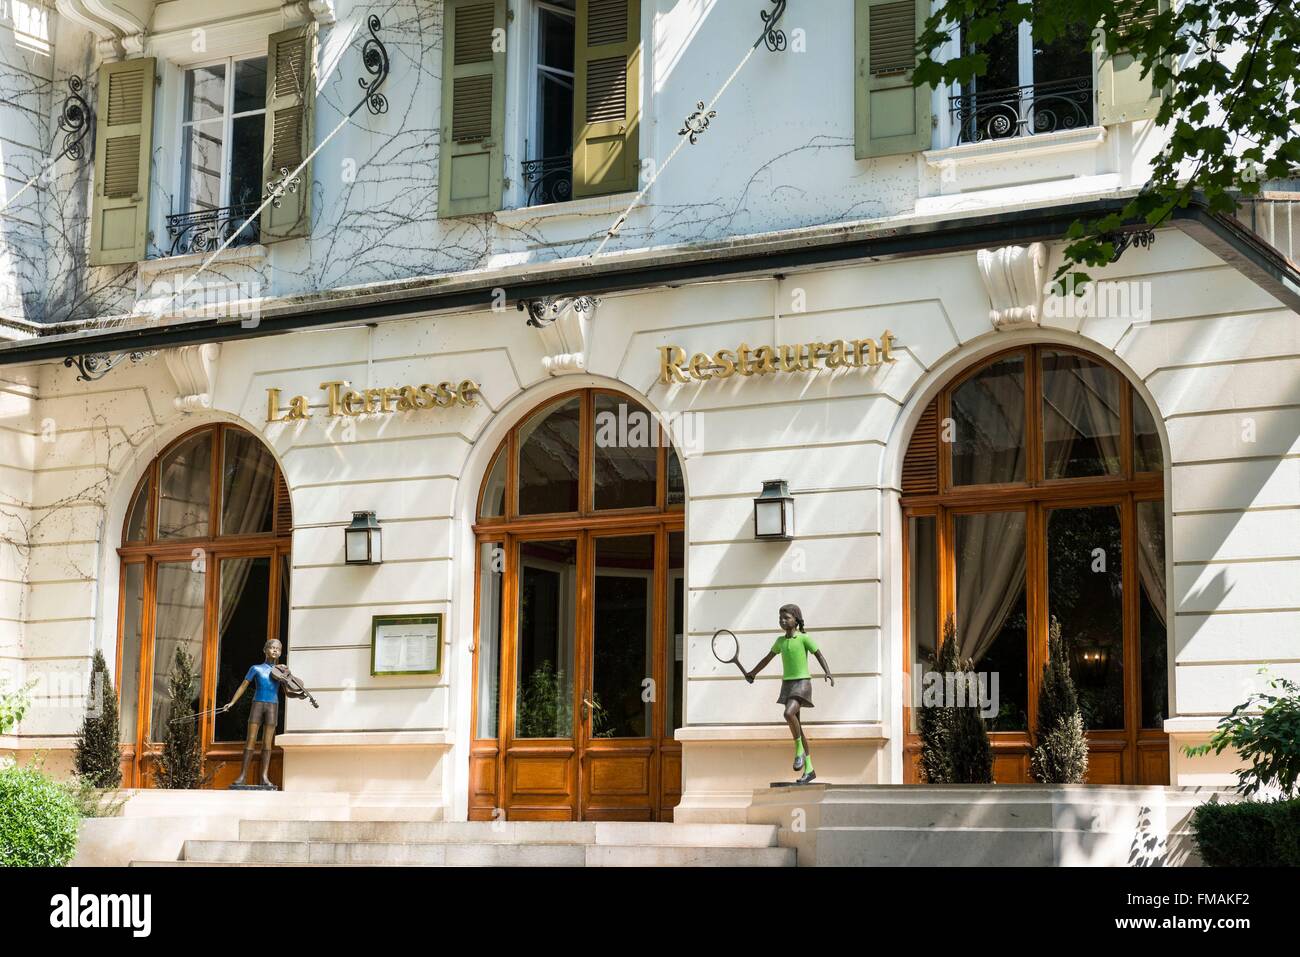 France, Ain, Pays de Gex, Divonne les Bains, La Terrasse restaurant Stock Photo